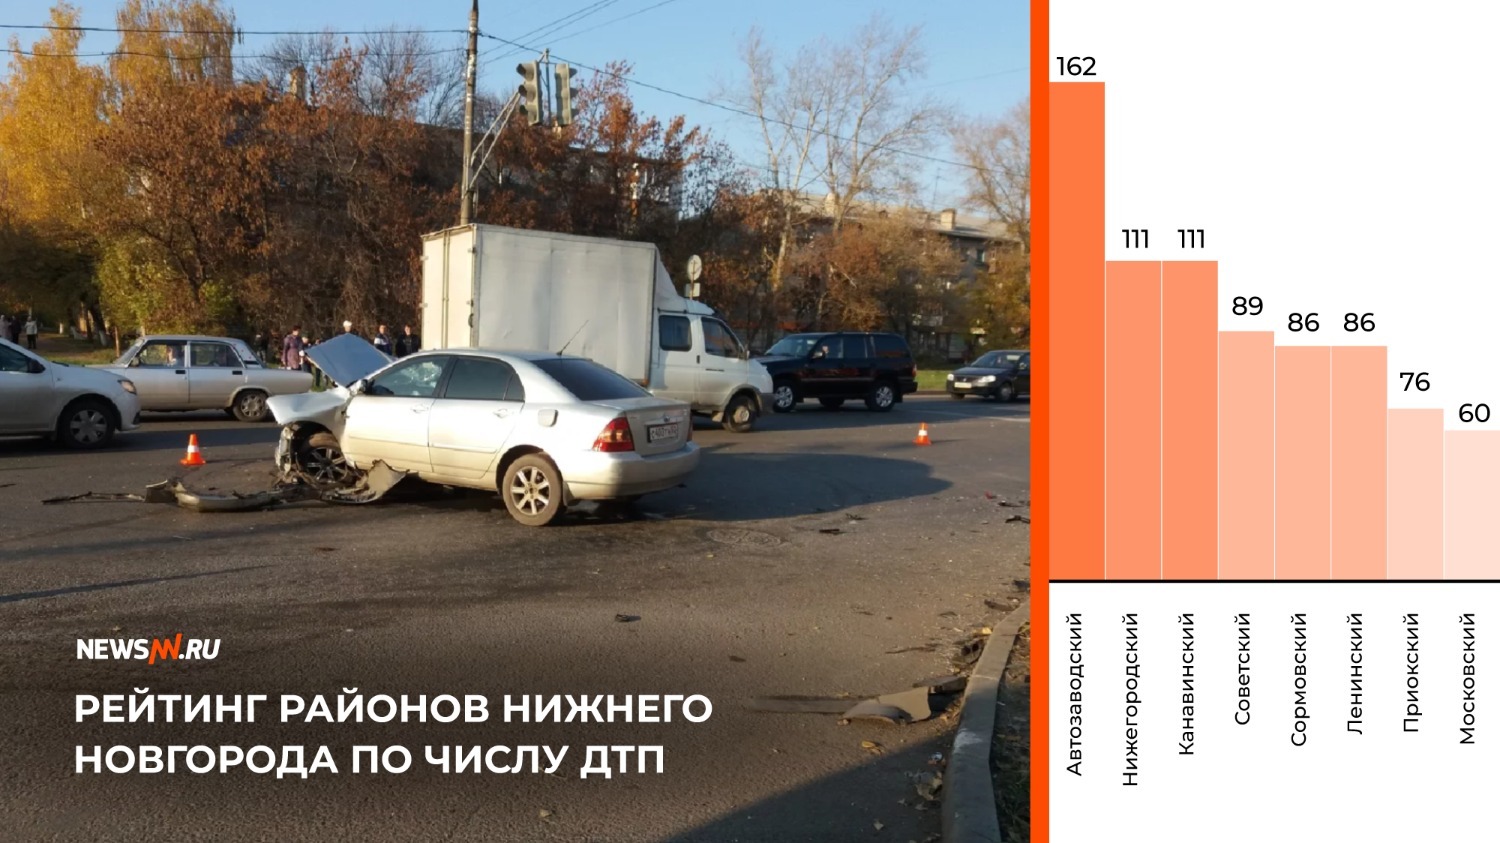 Рейтинг районов Нижнего Новгорода по числу ДТП